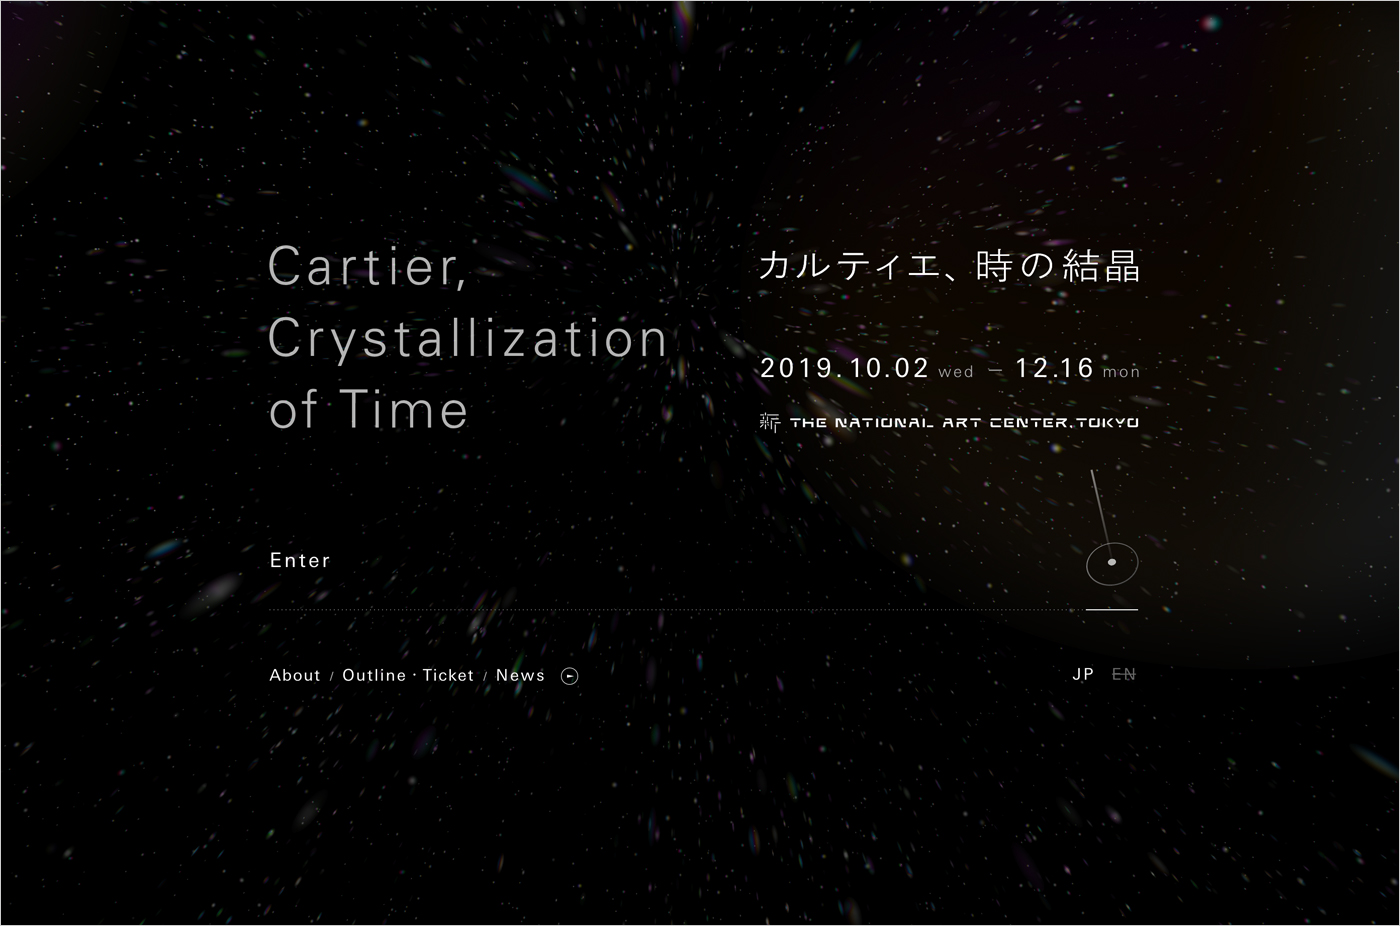 Cartier, Crystallization of Time｜The National Art Center, Tokyoウェブサイトの画面キャプチャ画像